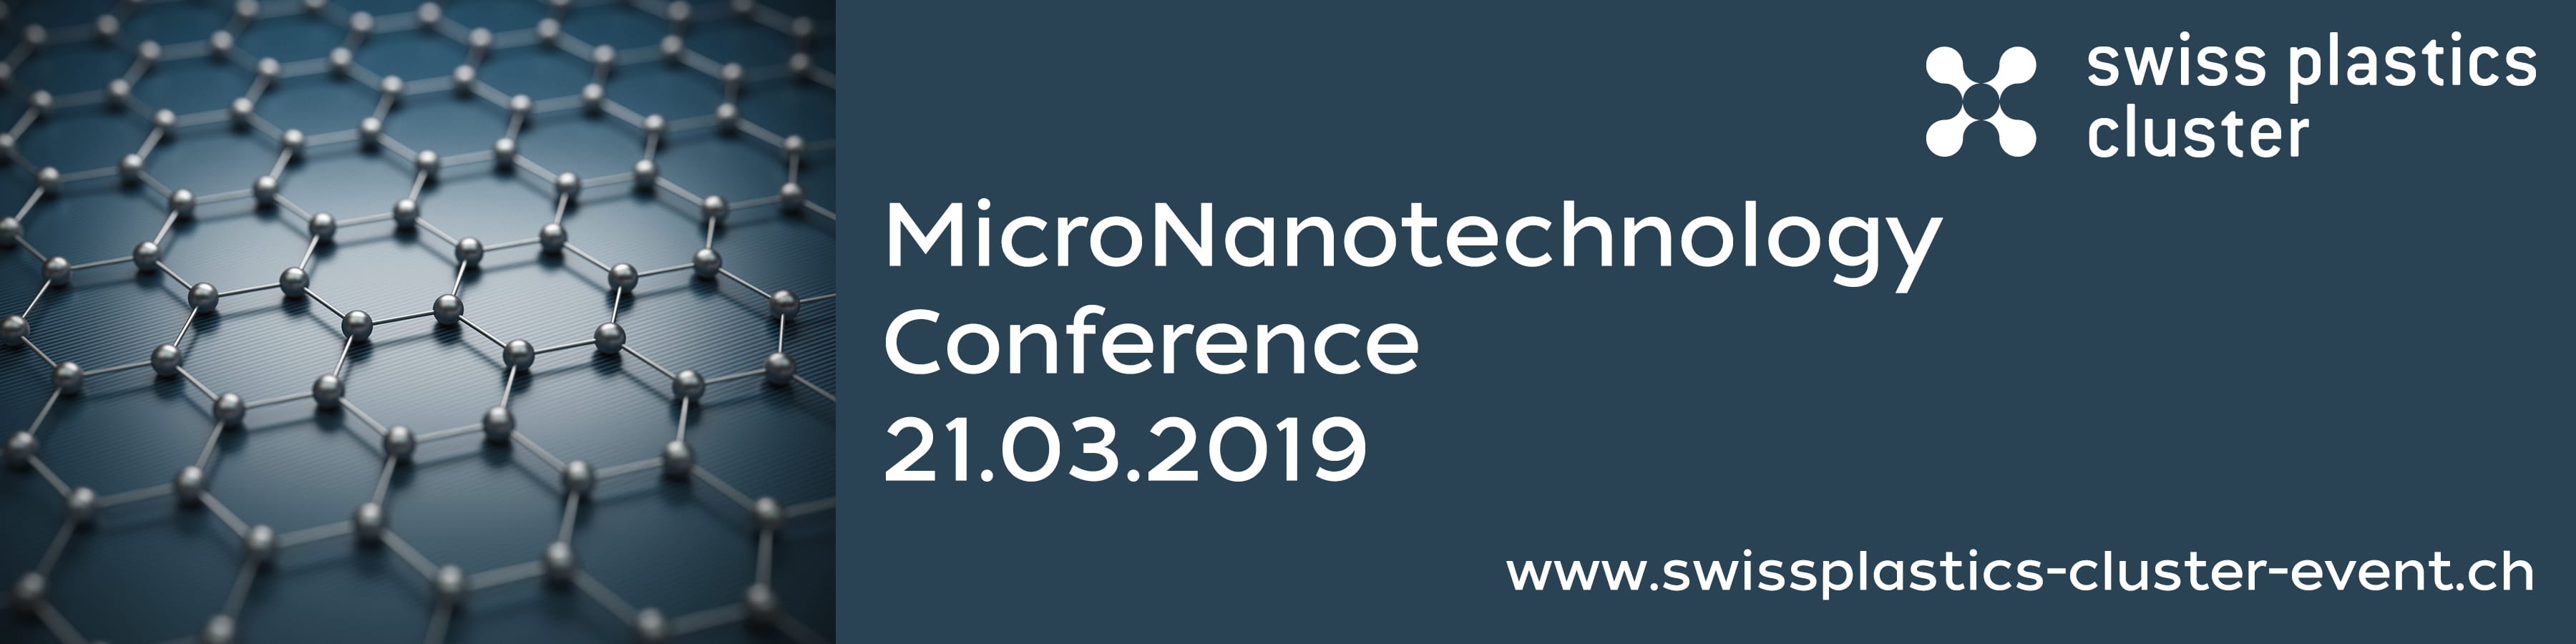 Mikro- & Nanotechnologie-Konferenz in Fribourg vom Schweizer Kunststoff-Cluster